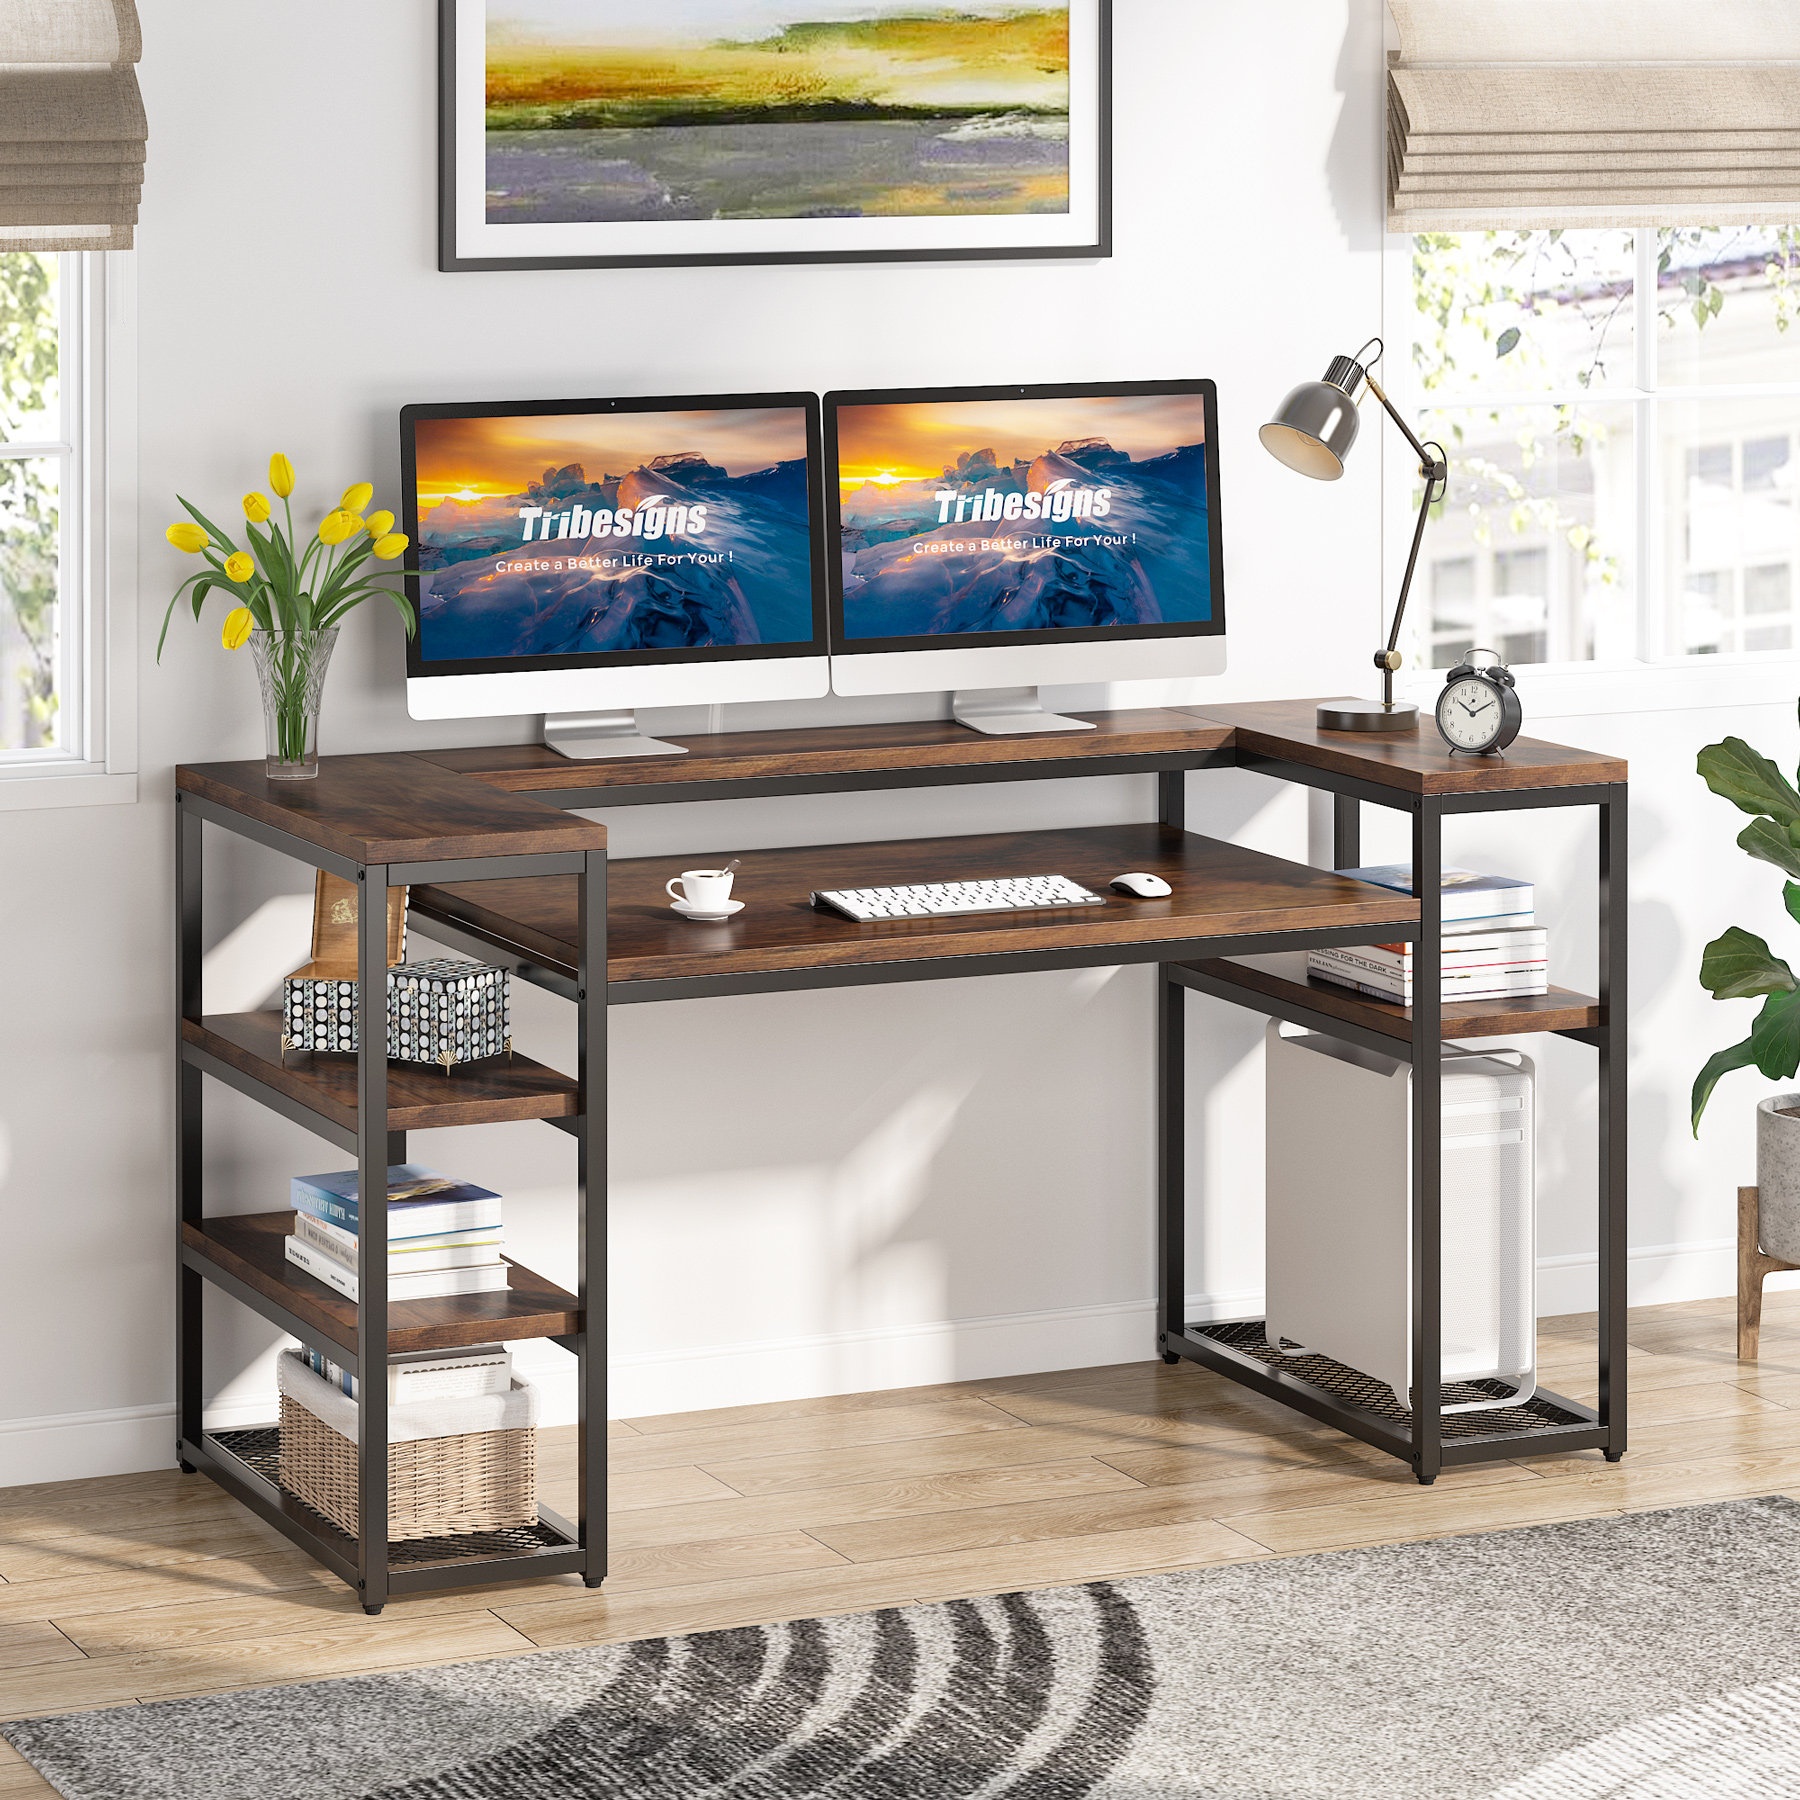 https://visualhunt.com/photos/23/computer-desk-with-storage-shelves.jpg